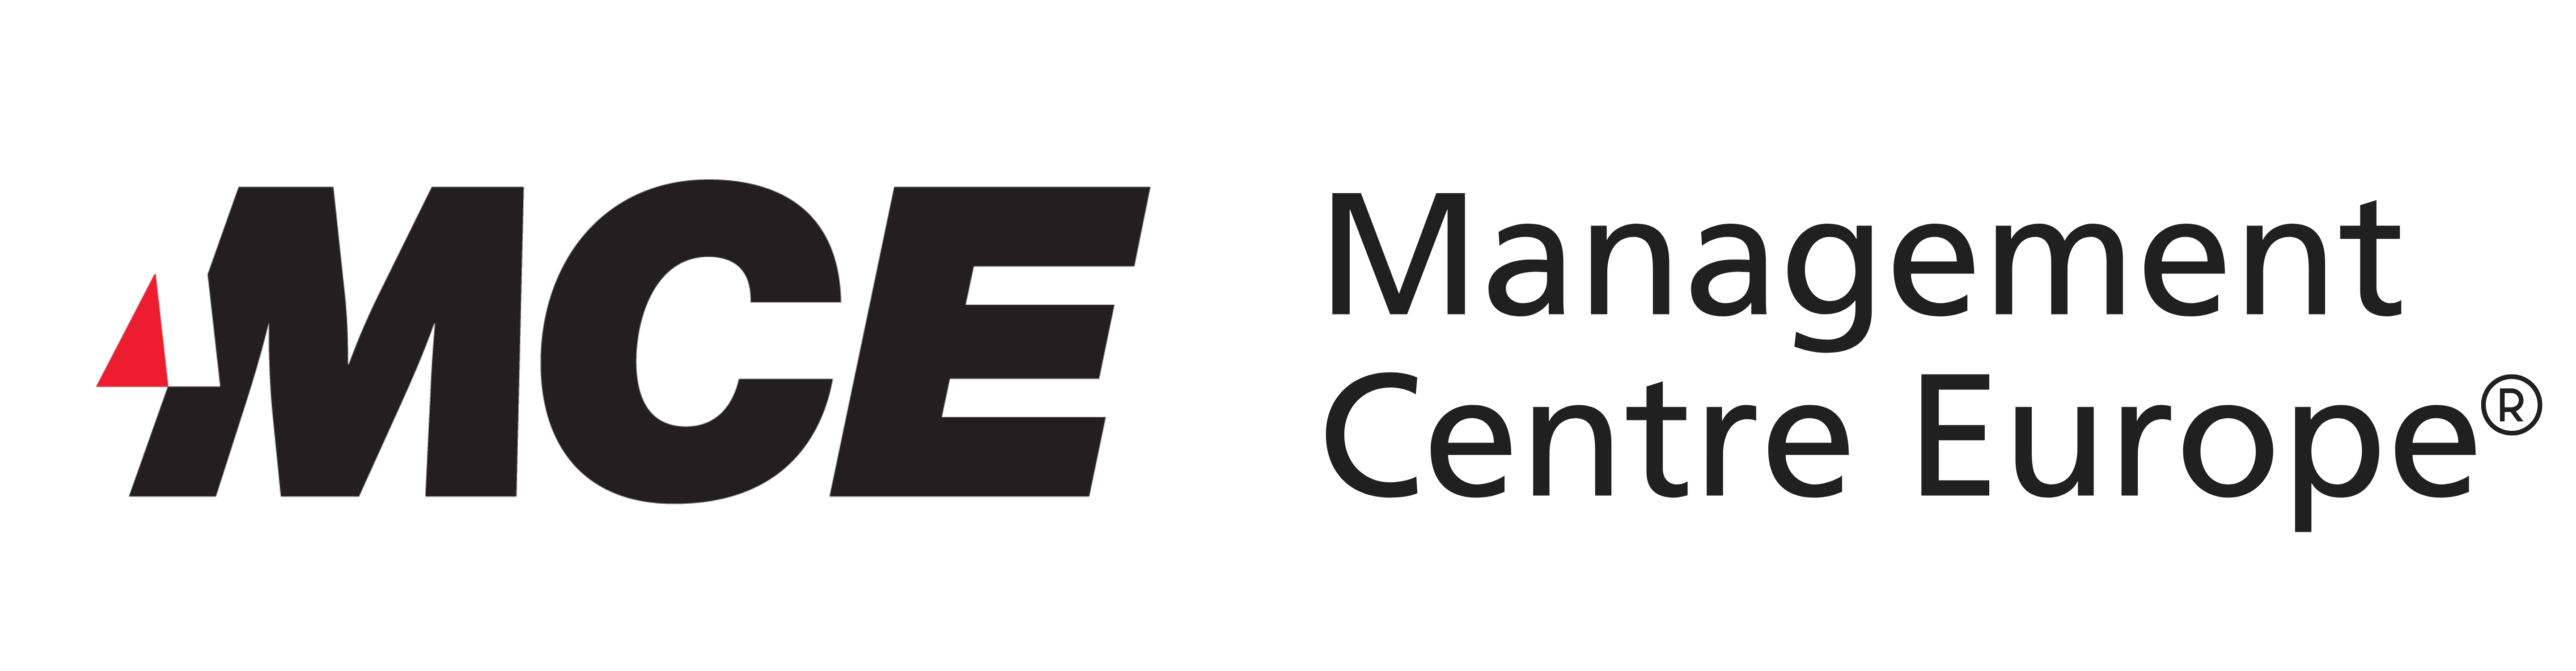 Management Centre Europe (MCE)